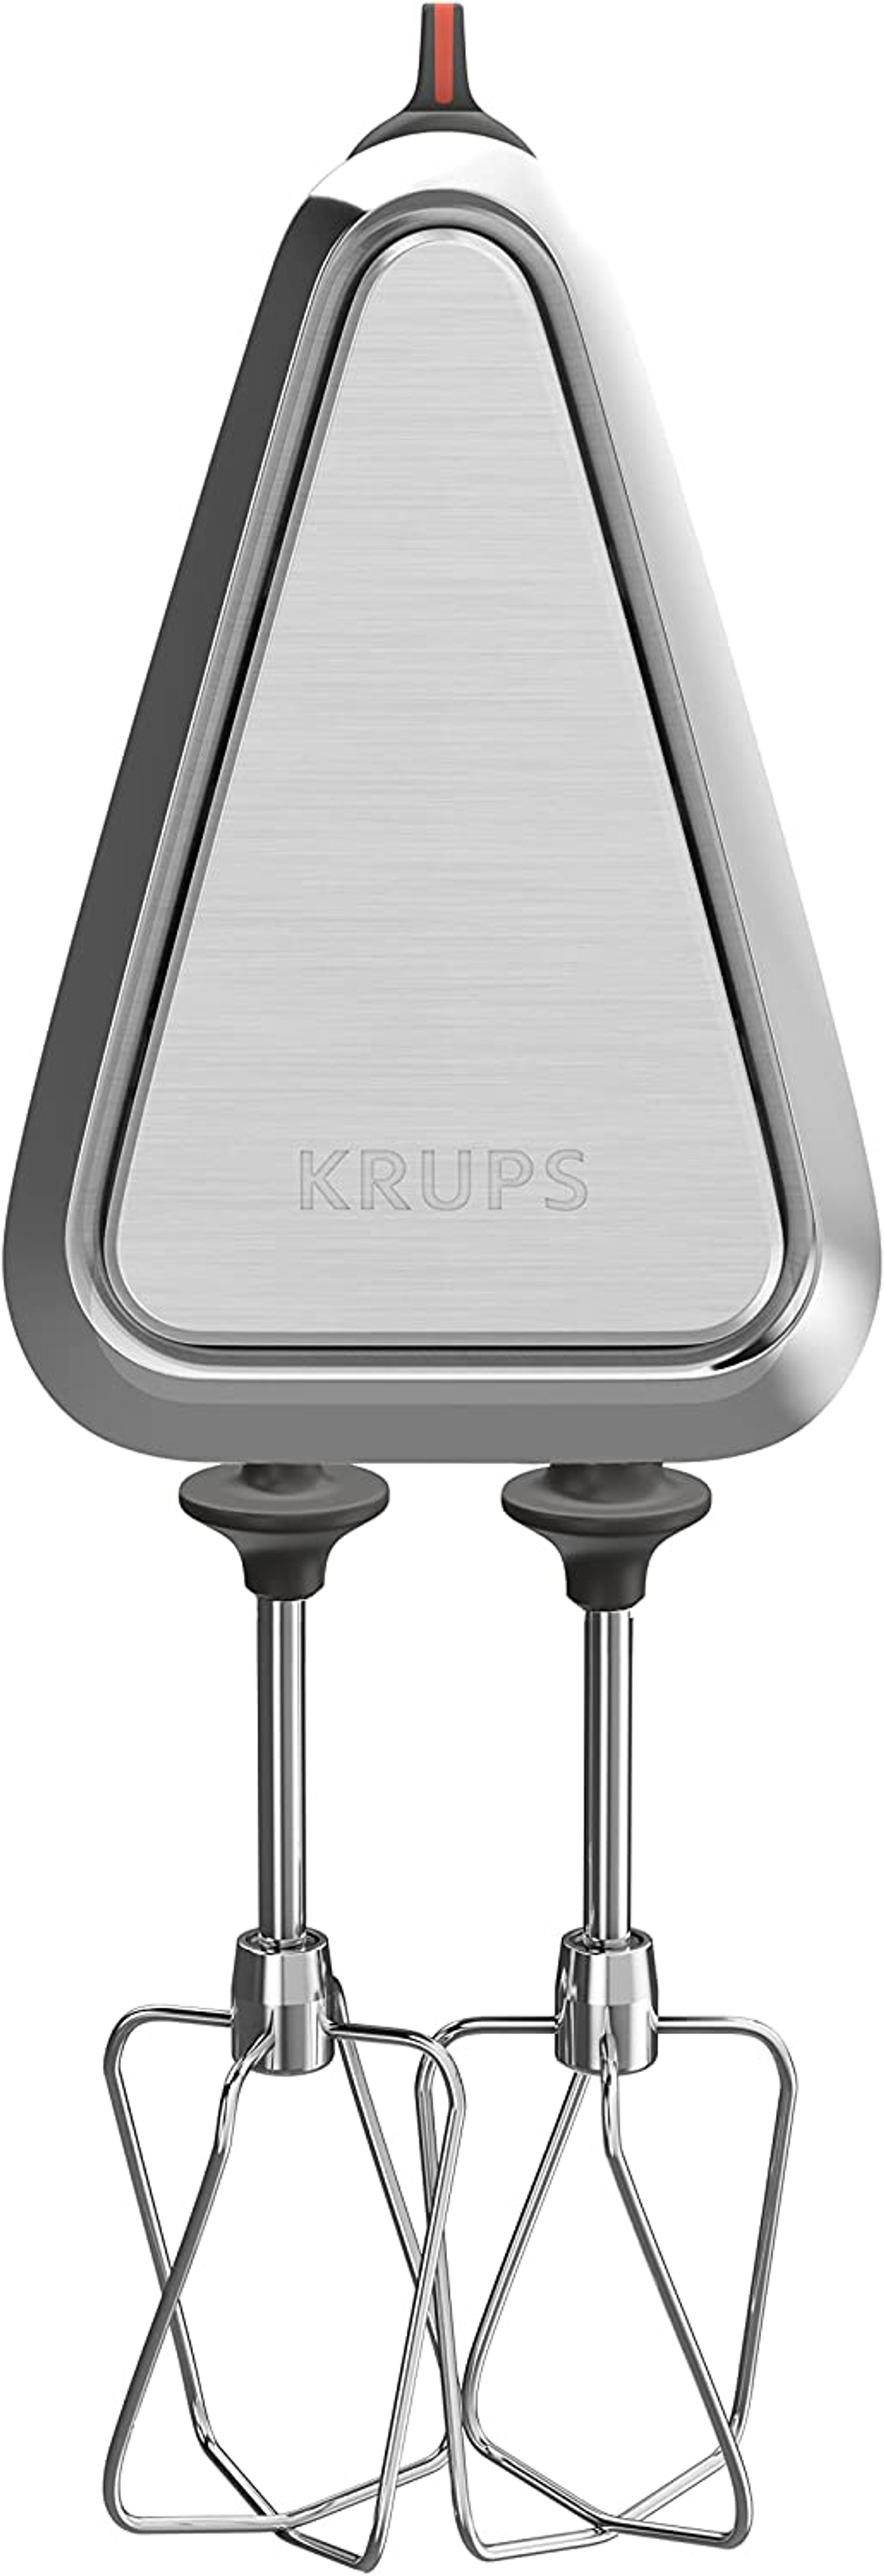 KRUPS GN9101 - 3 weiss Mix 9000 (750 Watt) Handmixer